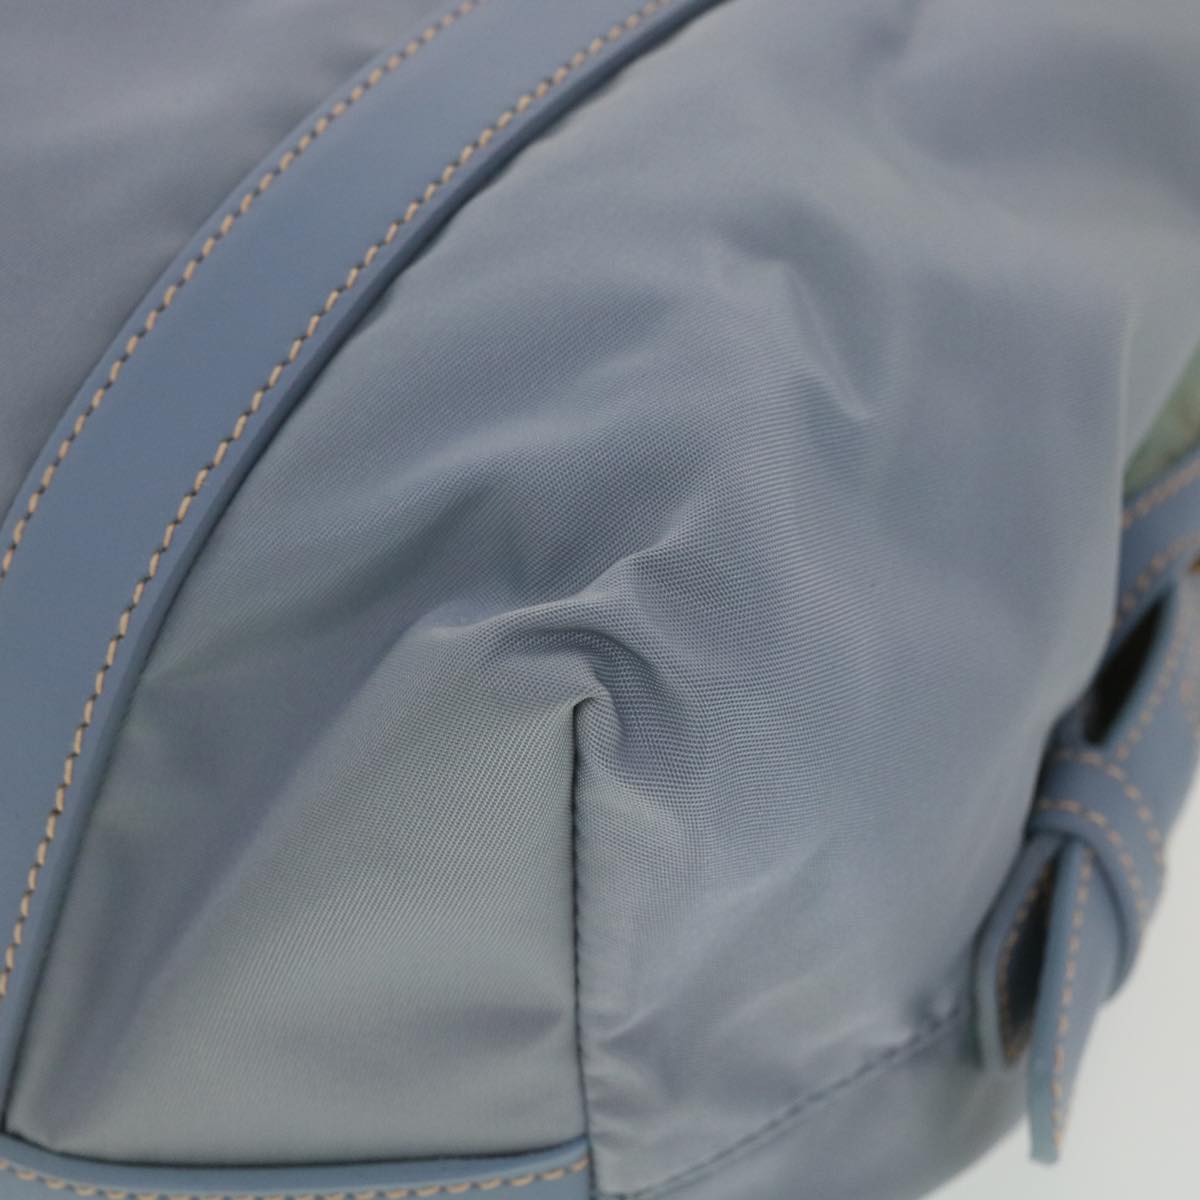 PRADA Shoulder Bag Nylon Light Blue Auth 38496